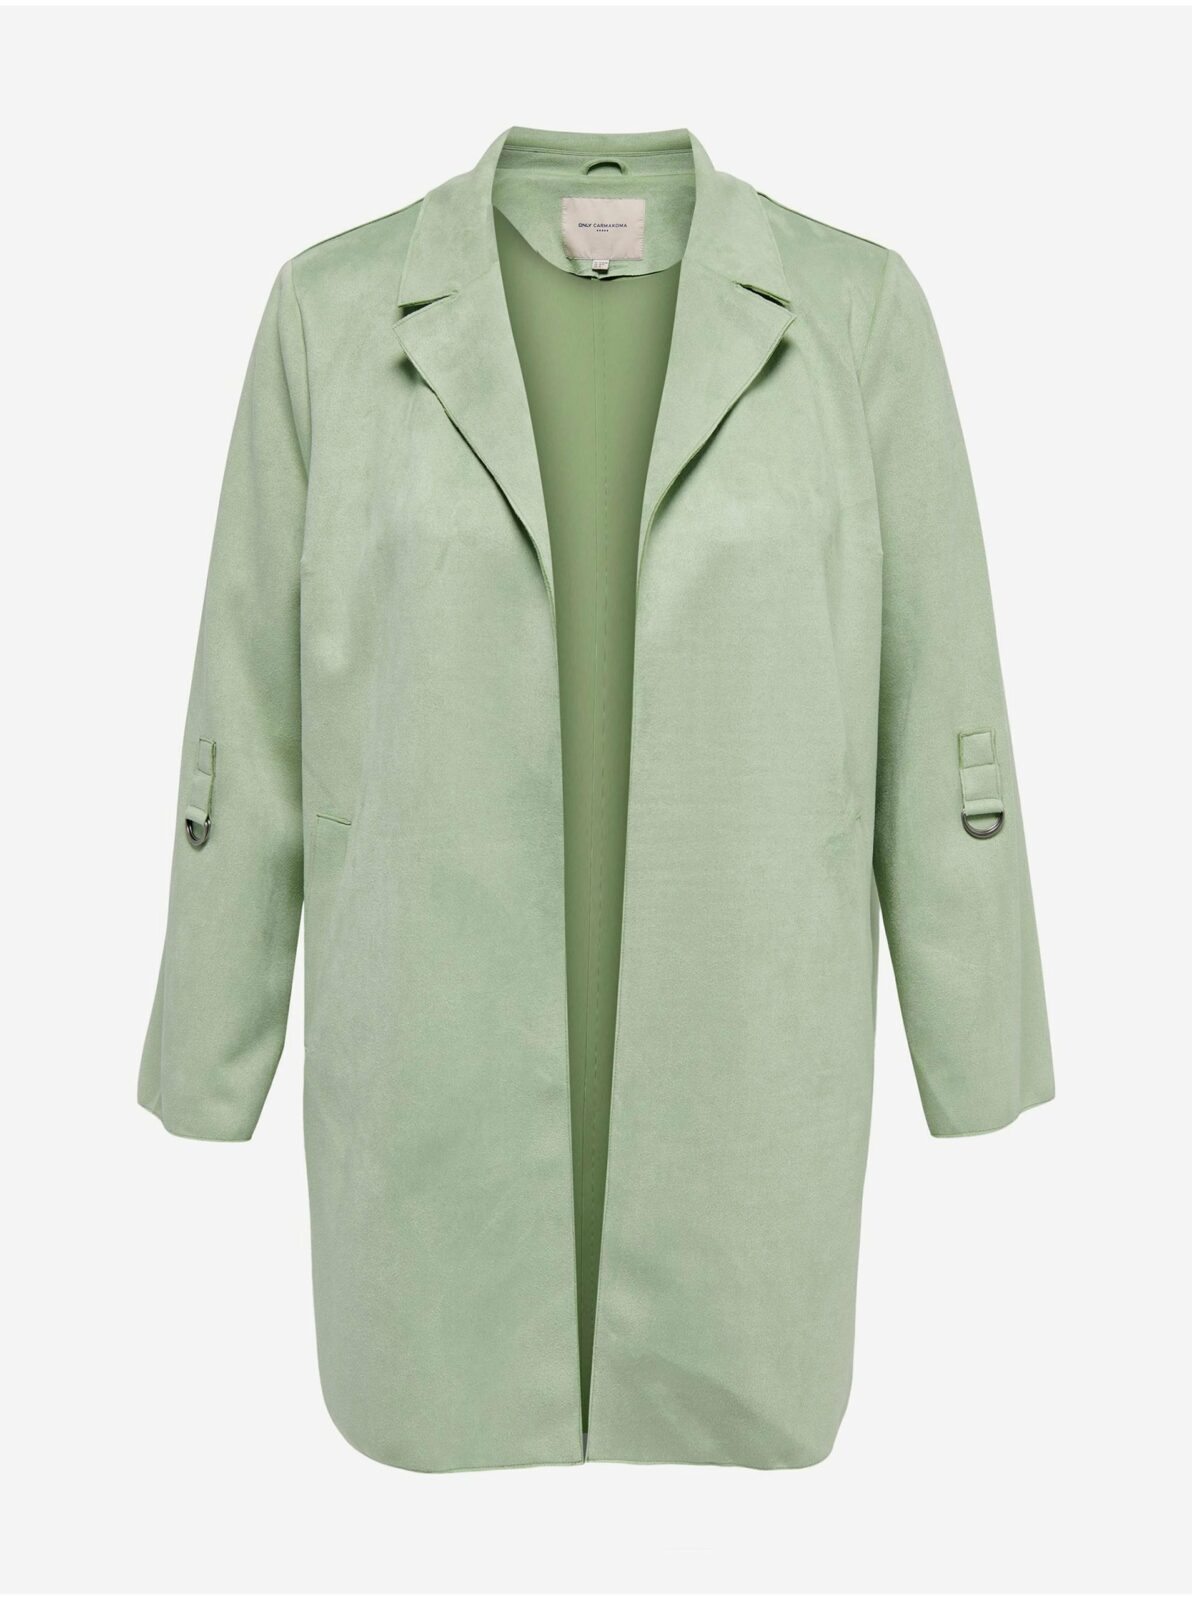 Světle zelený dámský lehký kabát v semišové